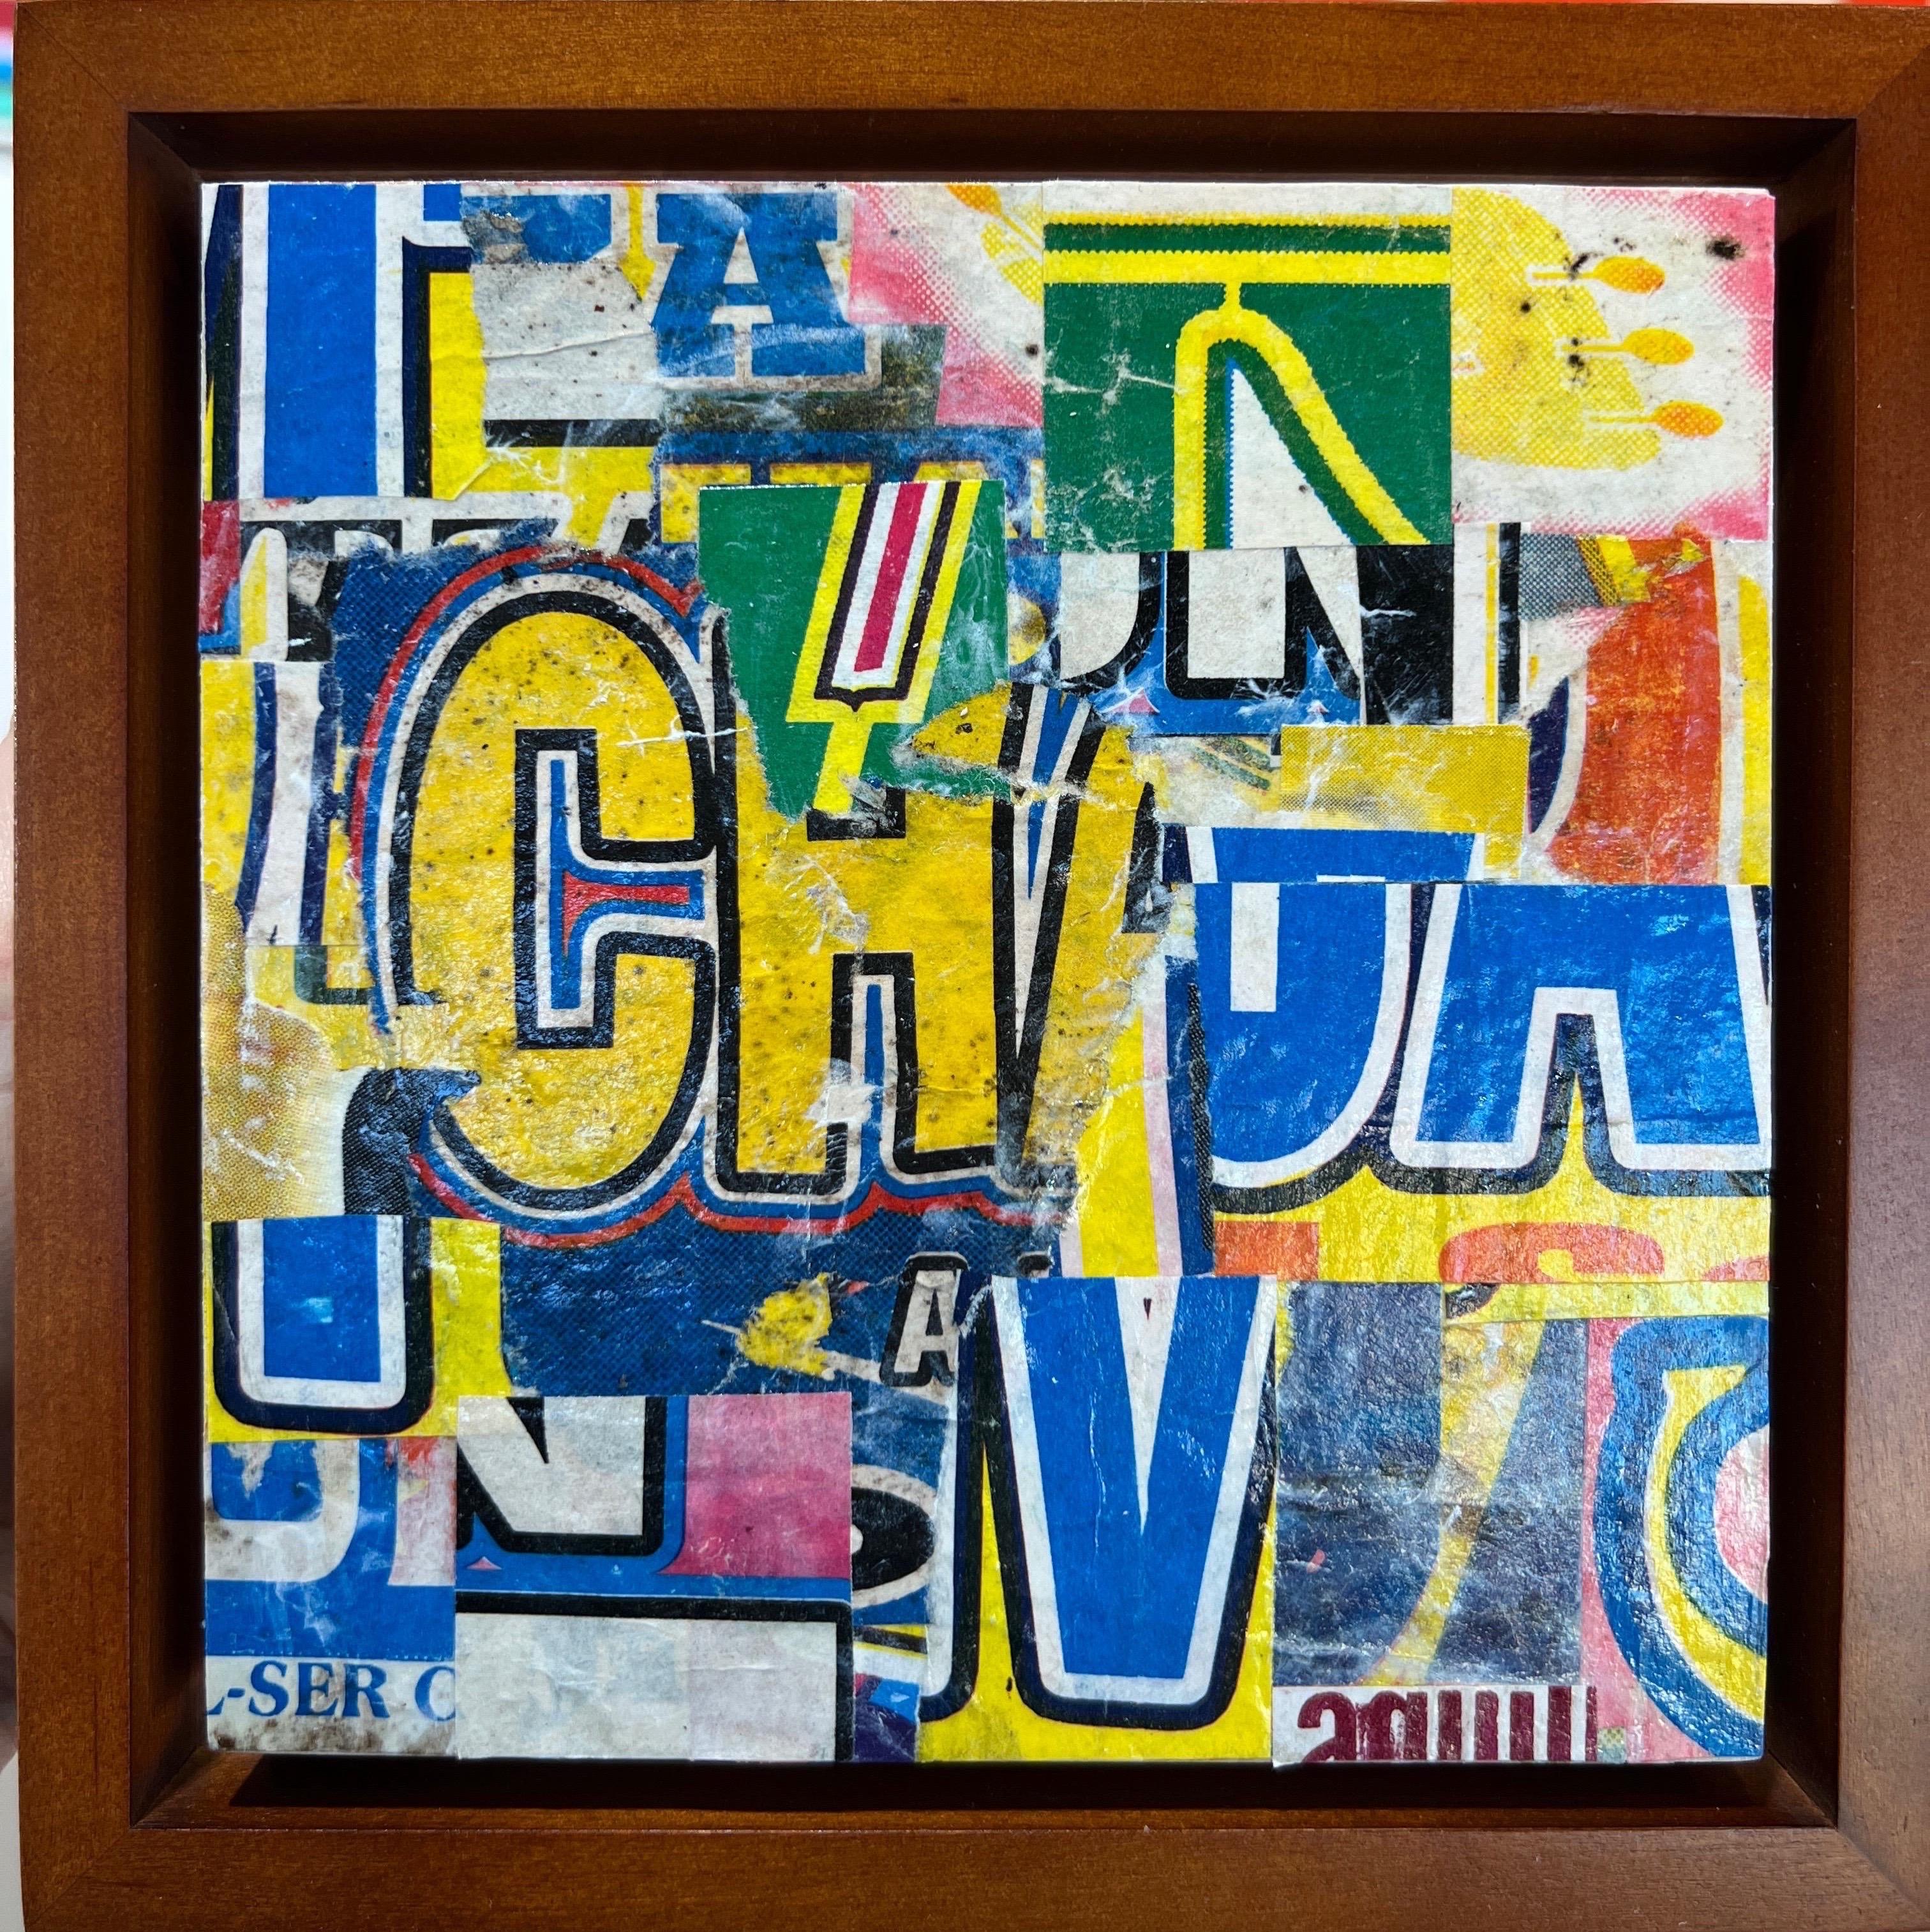 Postdogmatische Collage auf Platte, verso signiert
Kunst ist 6 x 6 mit Rahmen etwa 7 x 7

Cecil Touchon, geboren 1956 in Austin, Texas, ist ein zeitgenössischer amerikanischer Collagekünstler, Maler, veröffentlichter Dichter und Theoretiker, der in